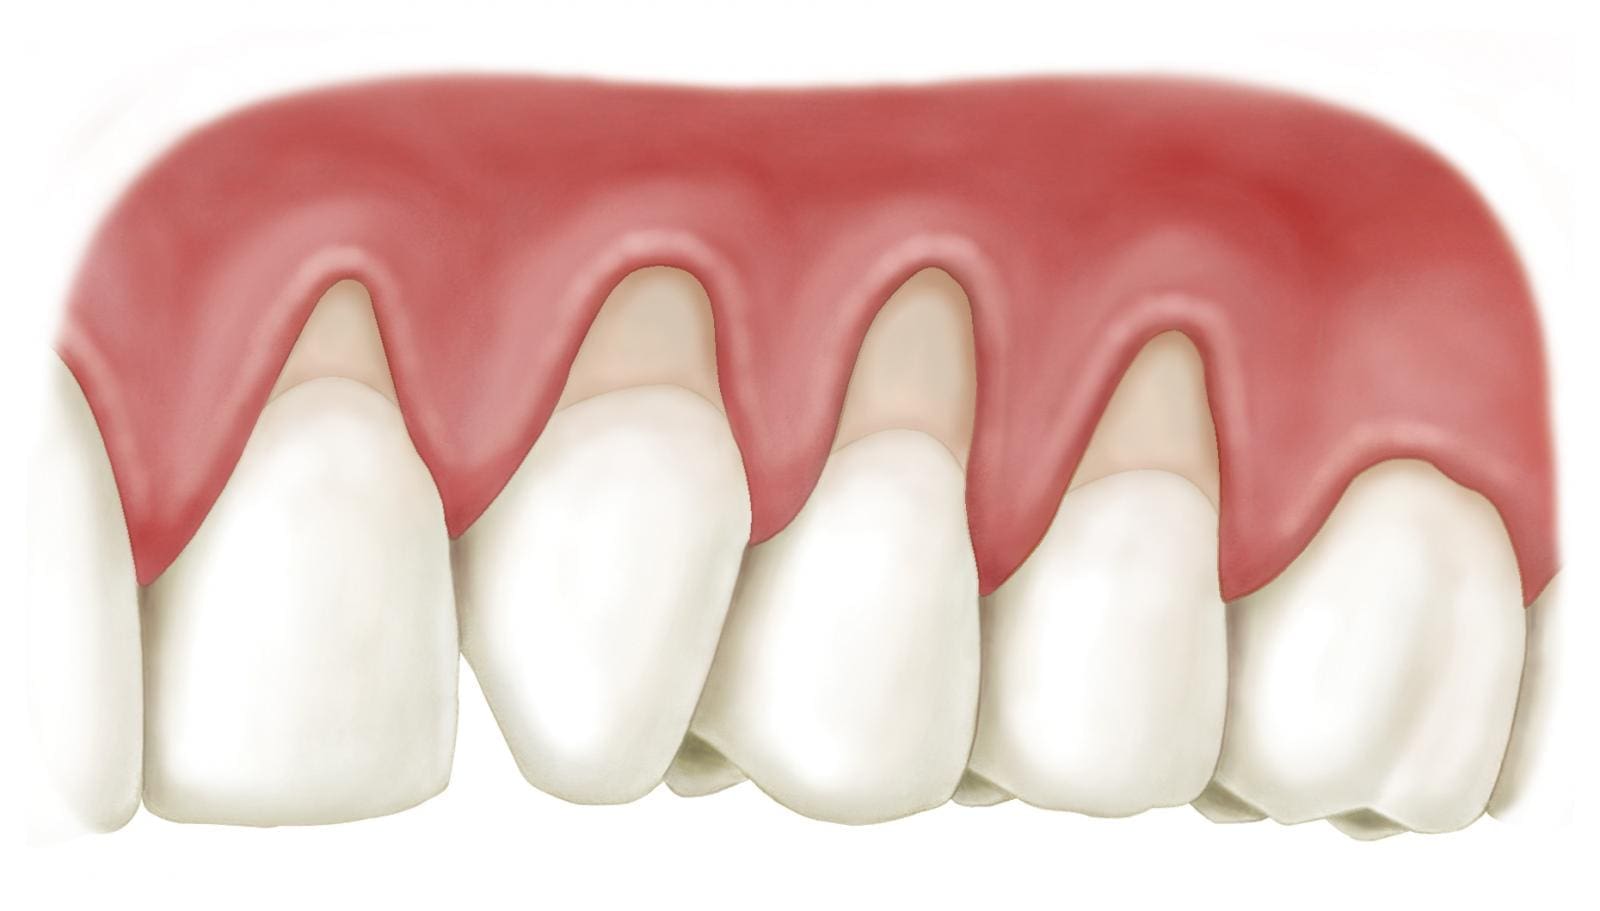 Hở cổ chân răng bọc sứ là một biến chứng nghiêm trọng, nó có thể xảy ra tại sao?
